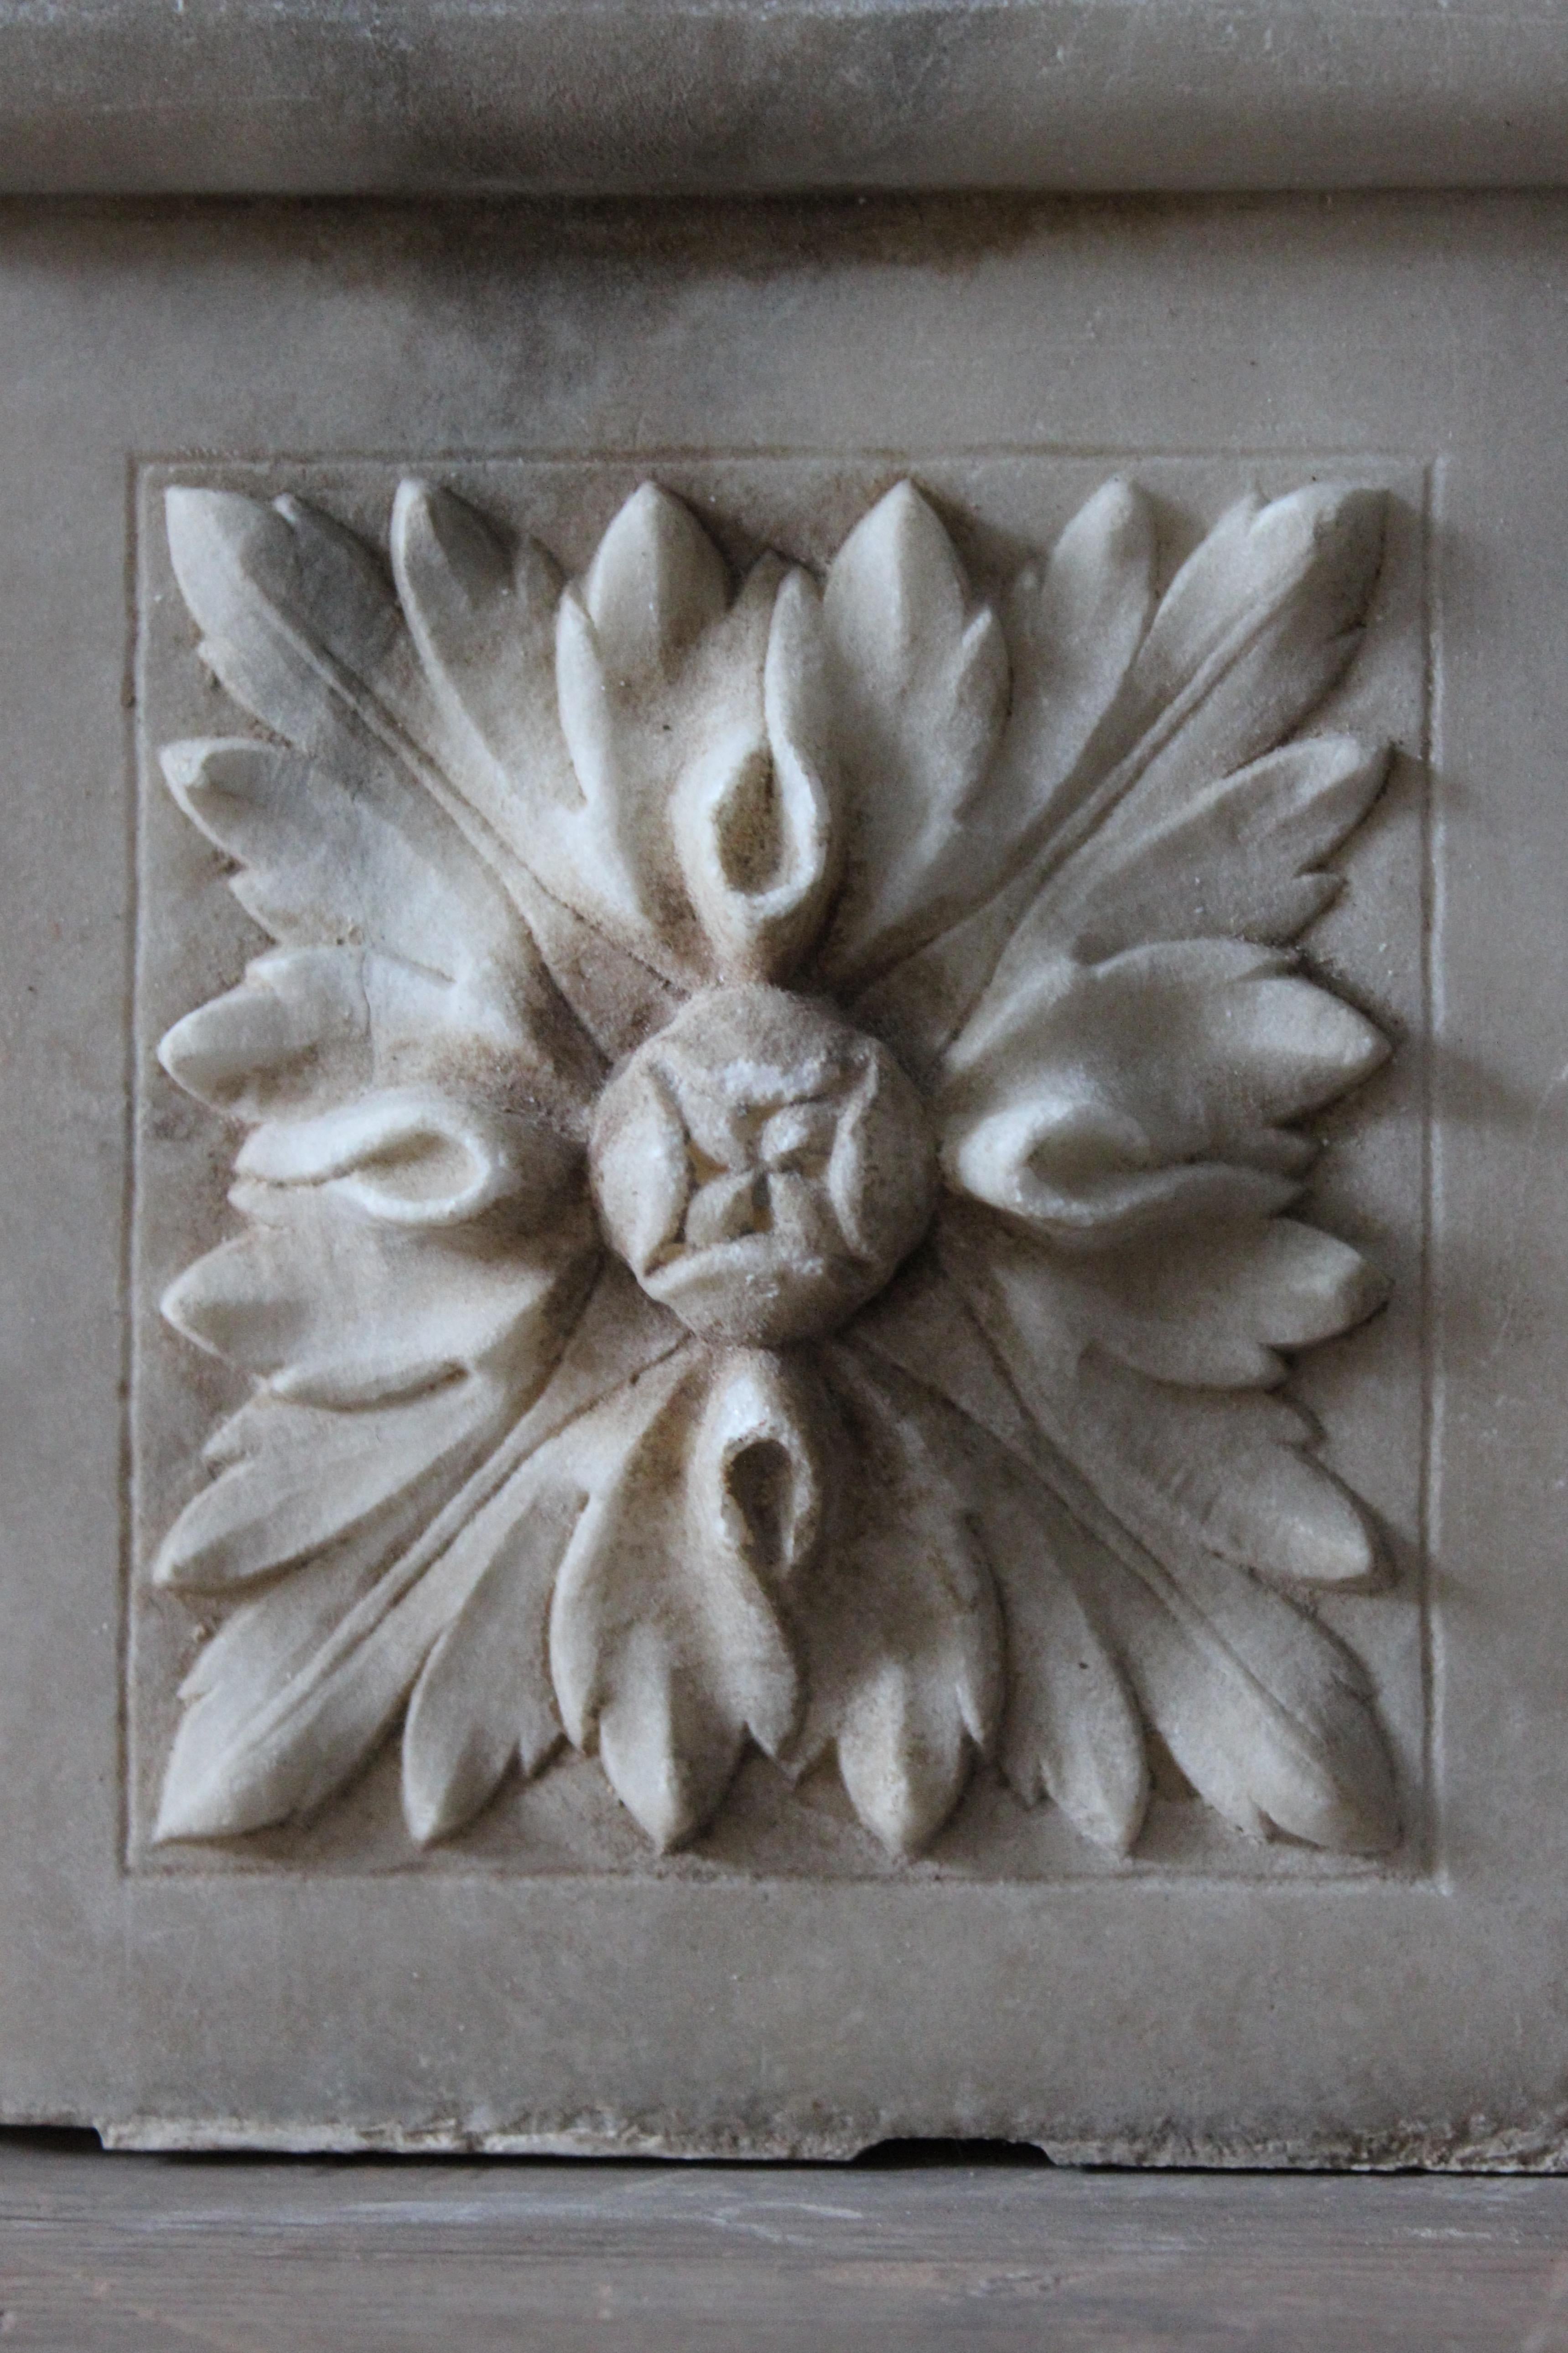 
Collection S du 19e siècle de huit tablettes de marbre sculptées à la main avec un décor organique faisant partie d'un élément architectural intérieur ou d'une cheminée.

Les sections sont extrêmement bien sculptées, nettes et présentent une bonne